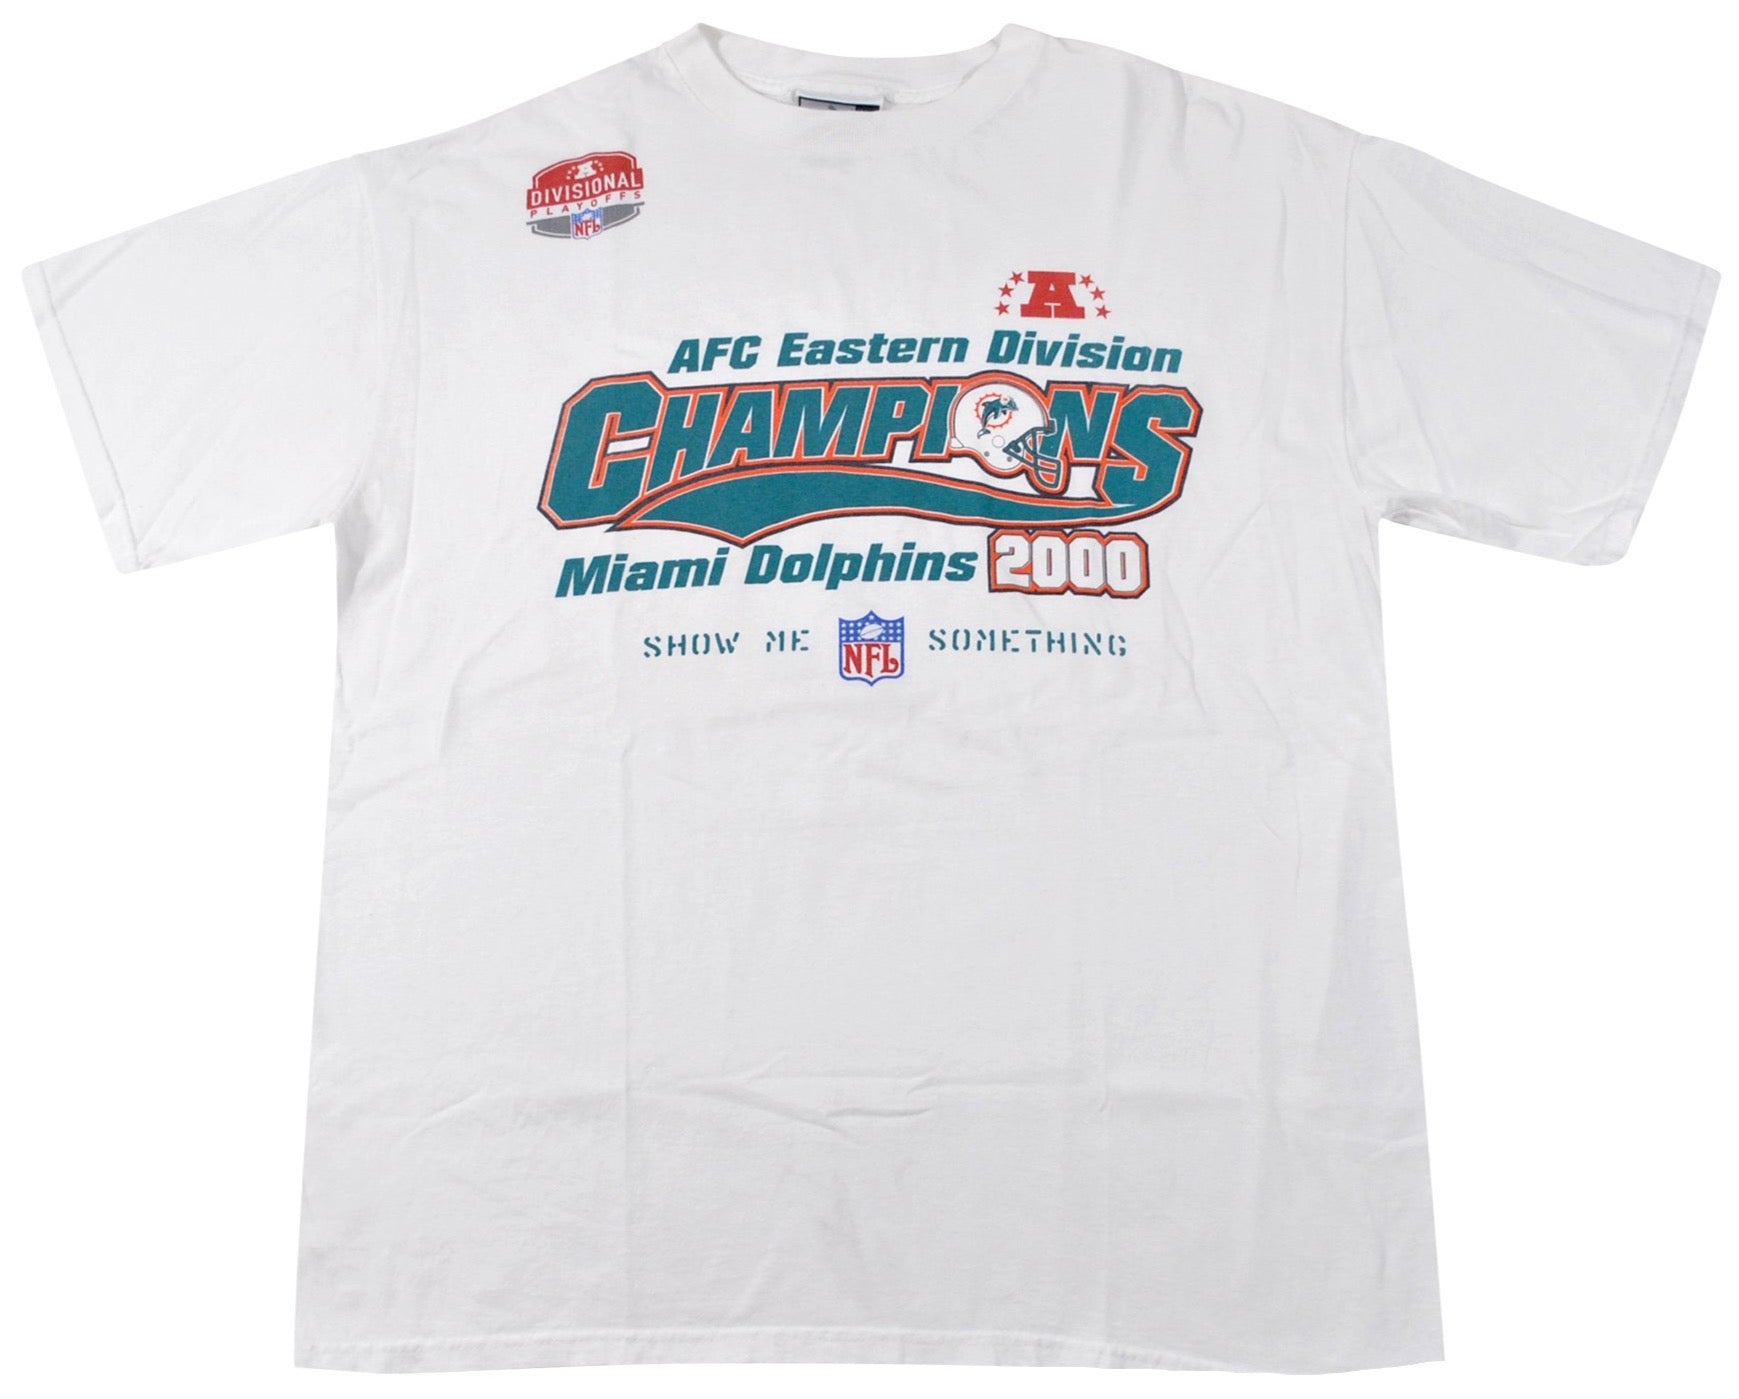 east champions shirt